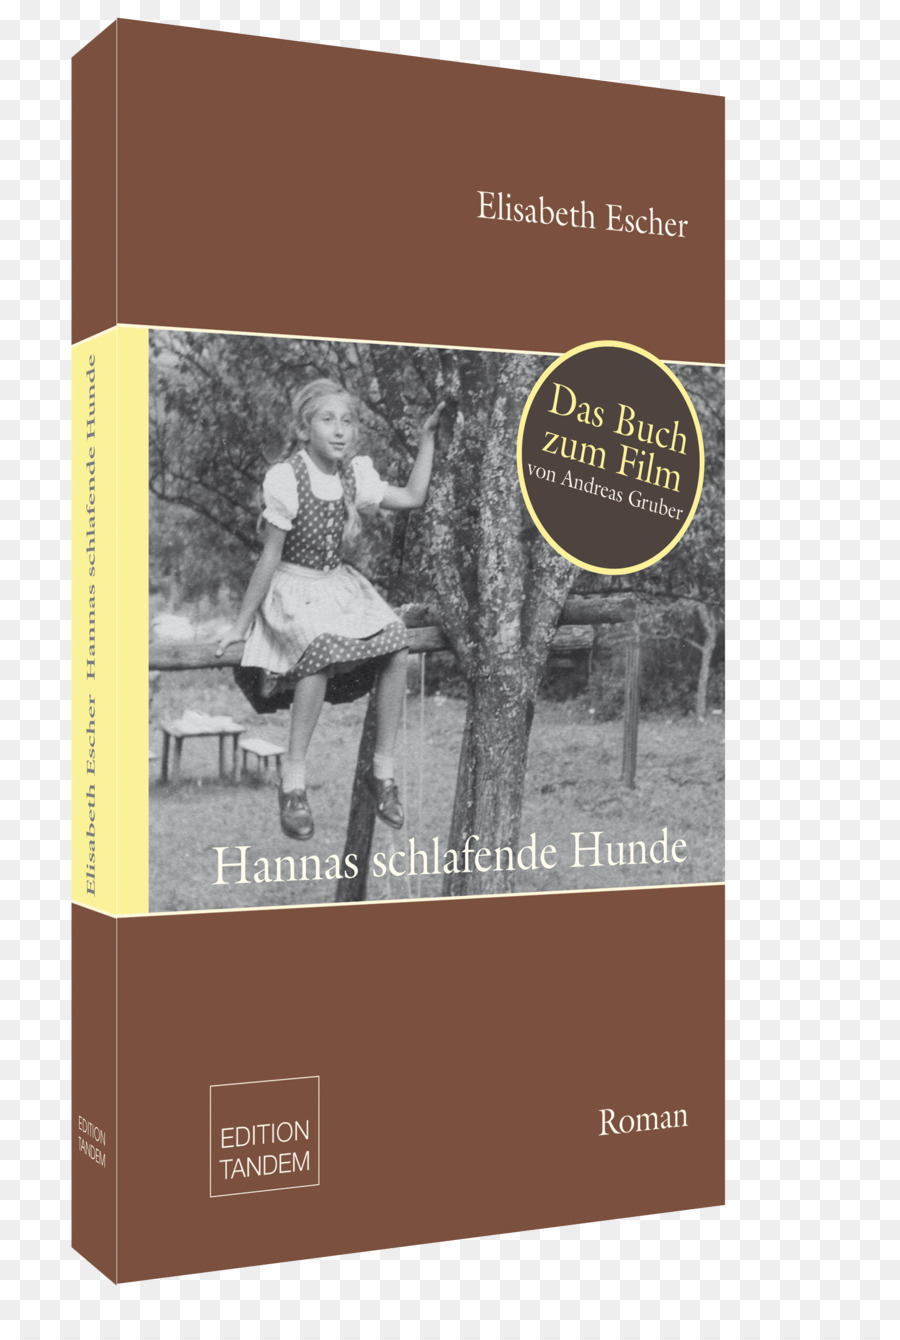 Hannas Schlafende نهاوند الرومانية，الكتاب PNG